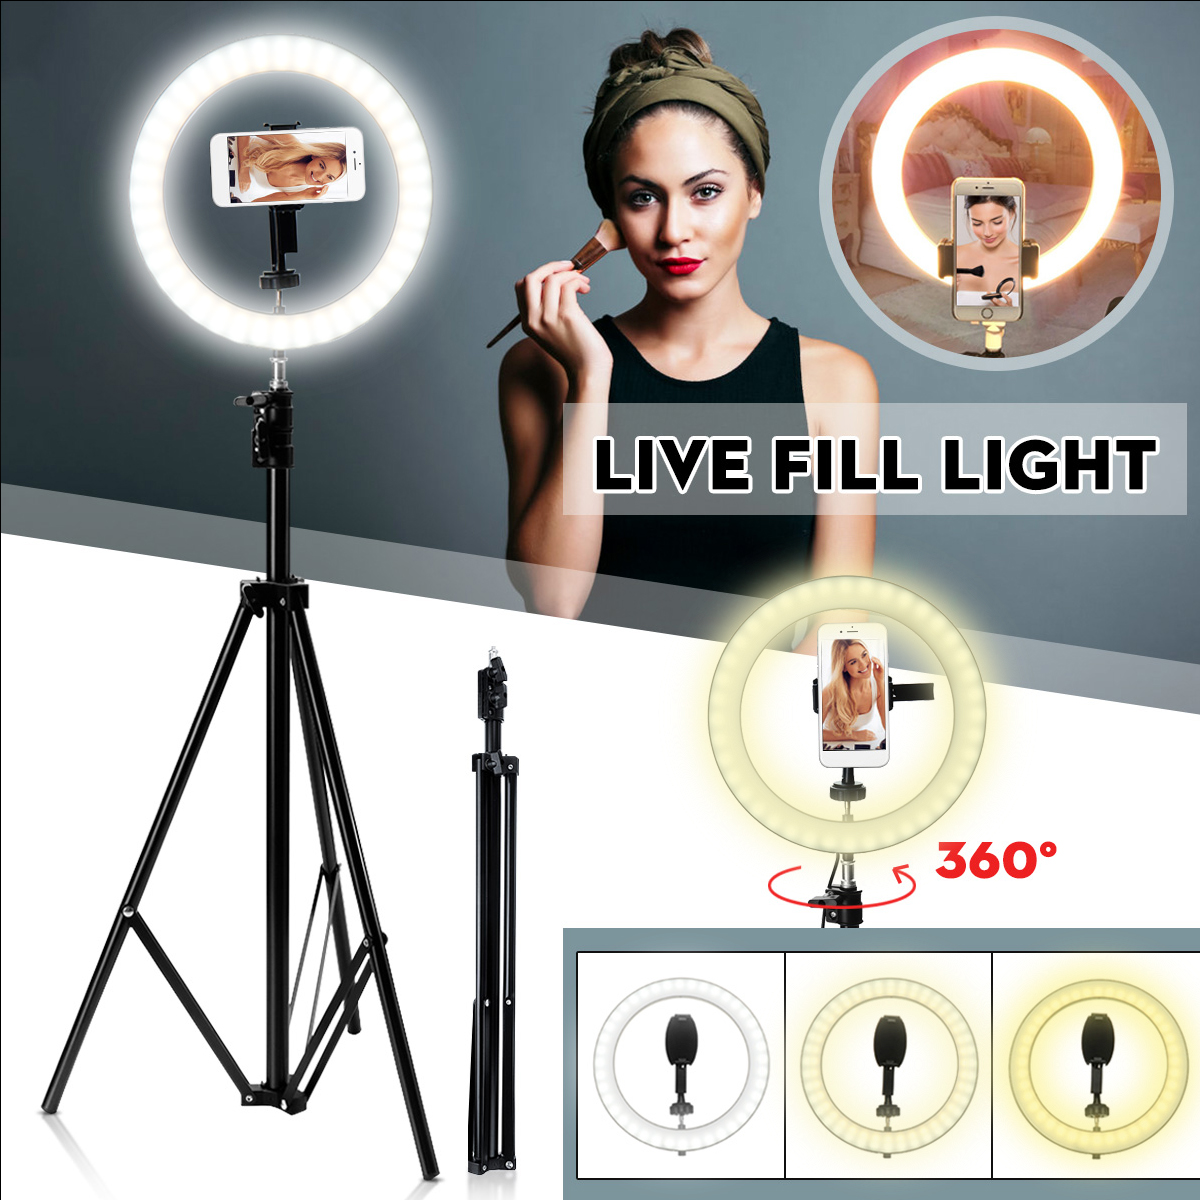 Portable-LED-Ring-Light-Tripod-Stand-Live-Selfie-Holder-USB-Plug-10-Inch-Fill-Light-for-YouTube-Tikt-1431335-1